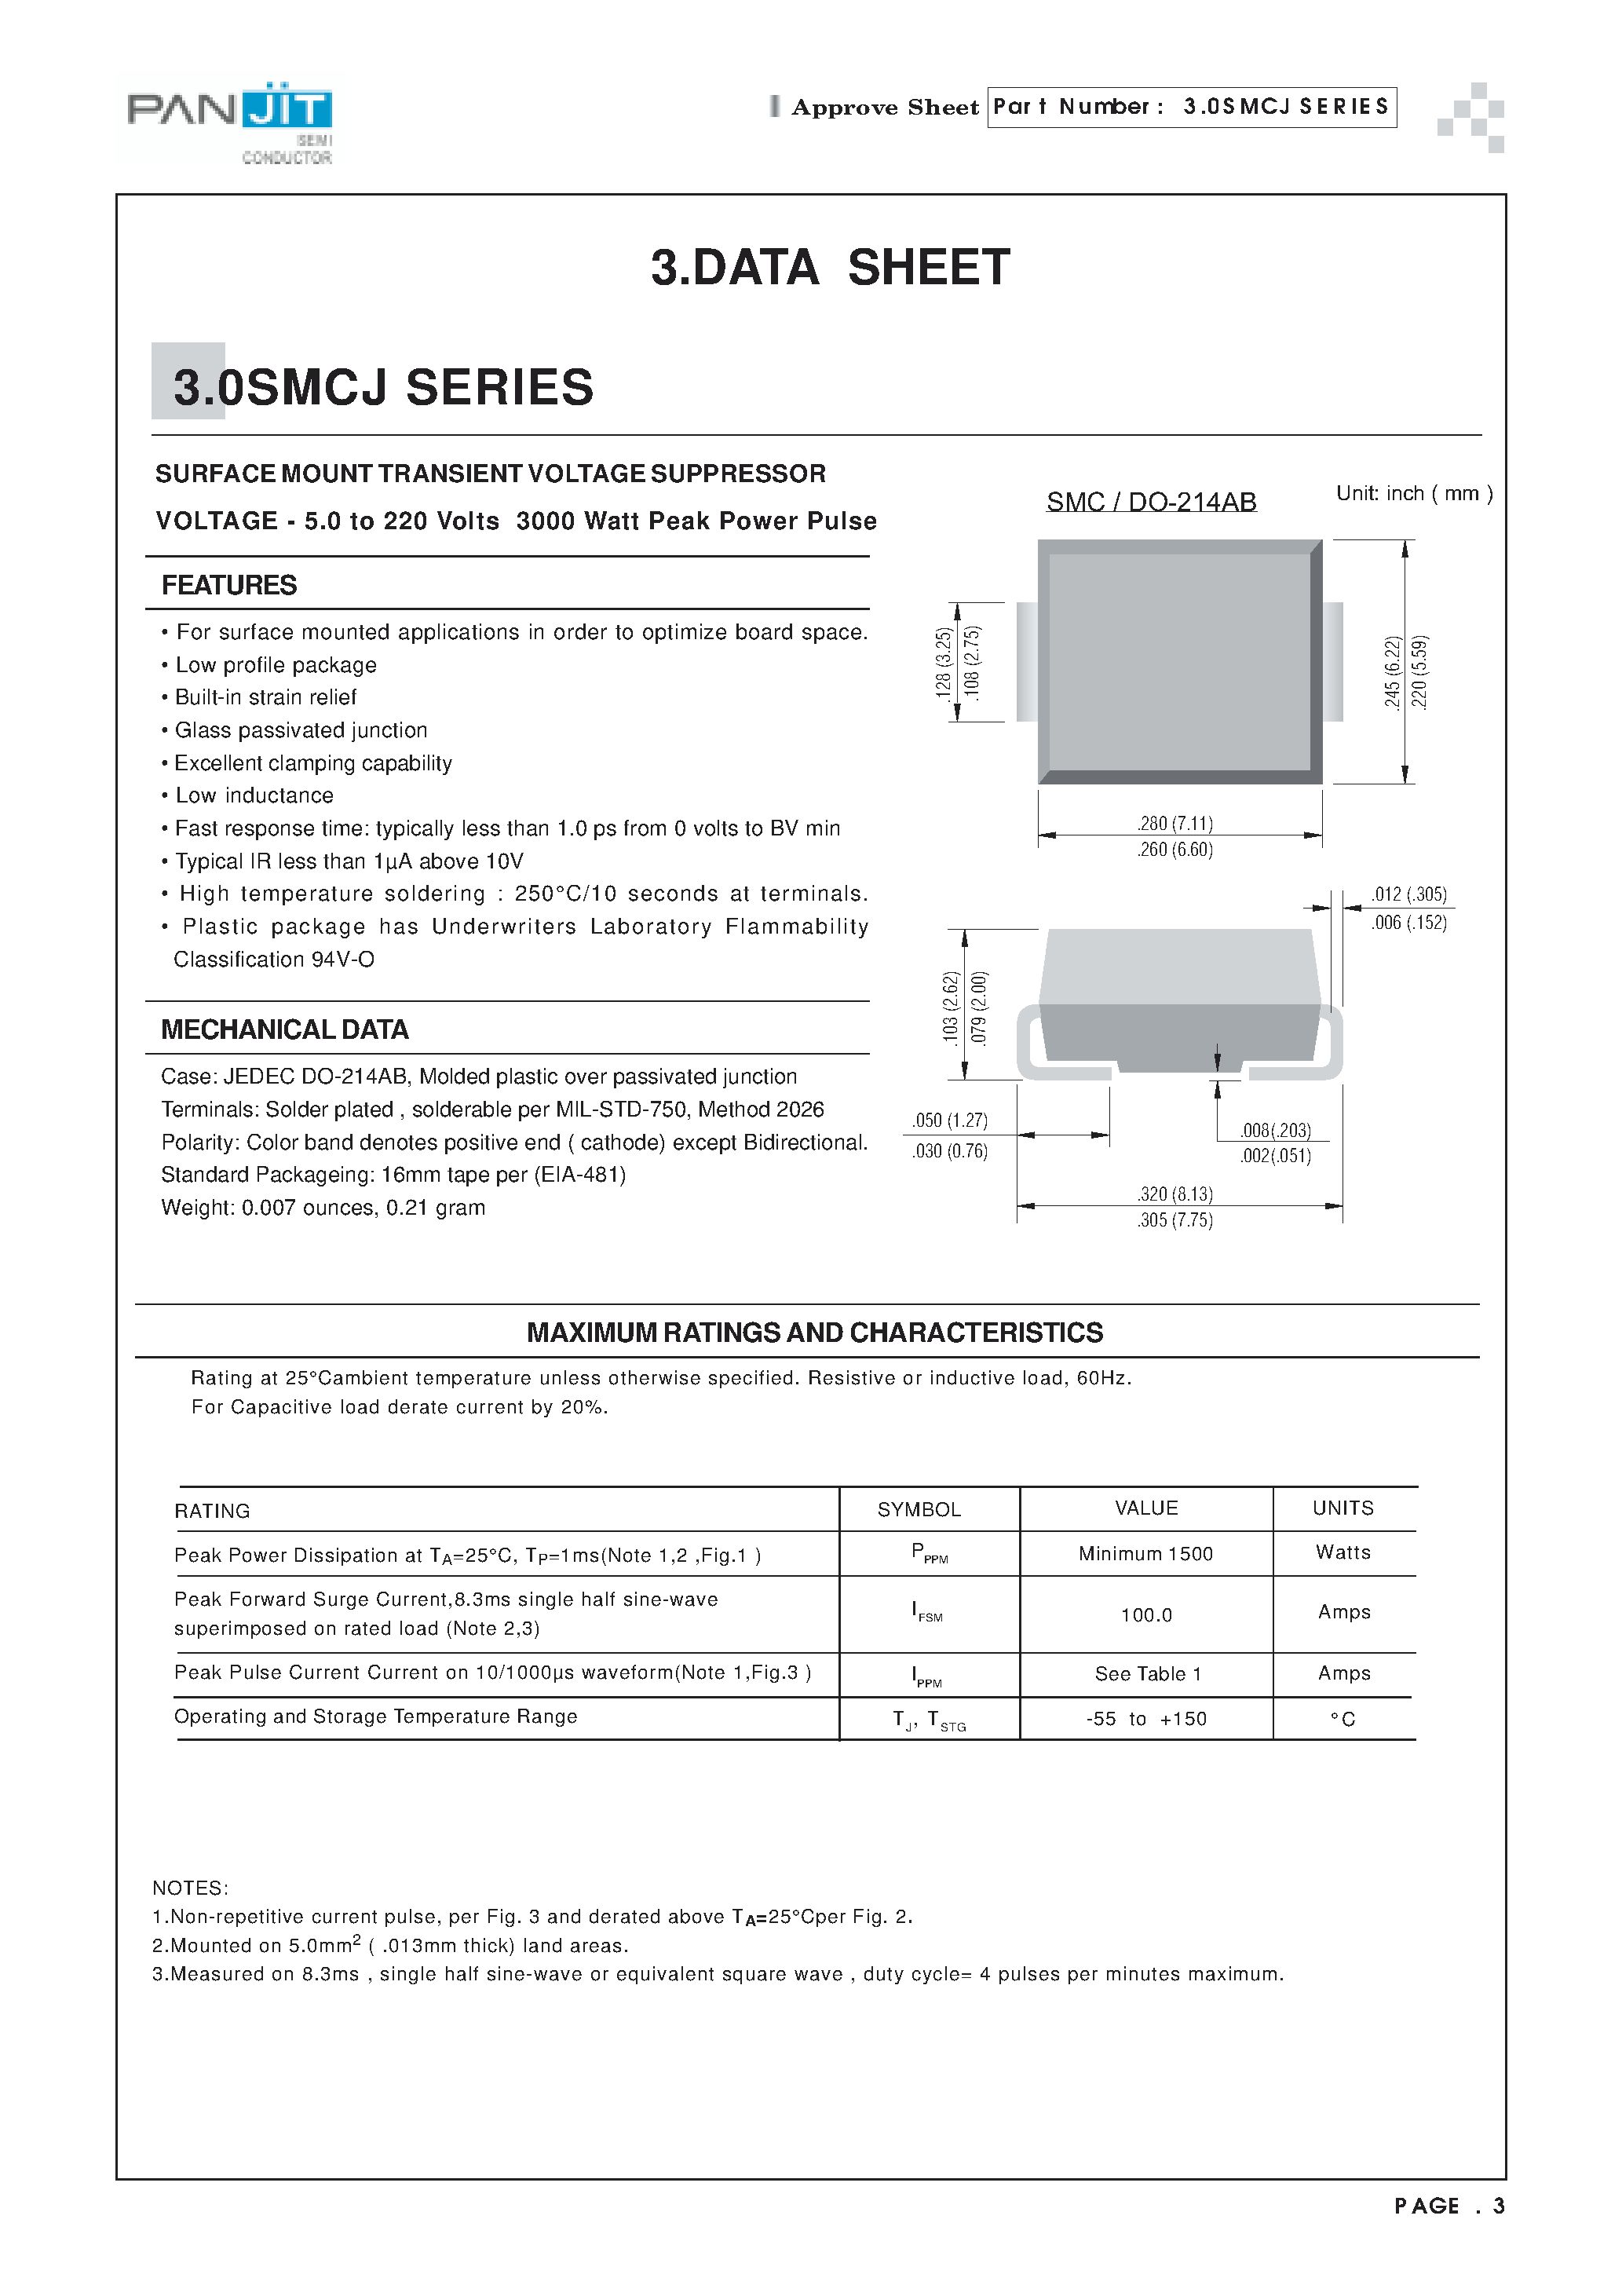 Datasheet 3.0SMCJ6.5 - SURFACE MOUNT TRANSIENT VOLTAGE SUPPRESSOR(VOLTAGE - 5.0 to 220 Volts 3000 Watt Peak Power Pulse) page 1